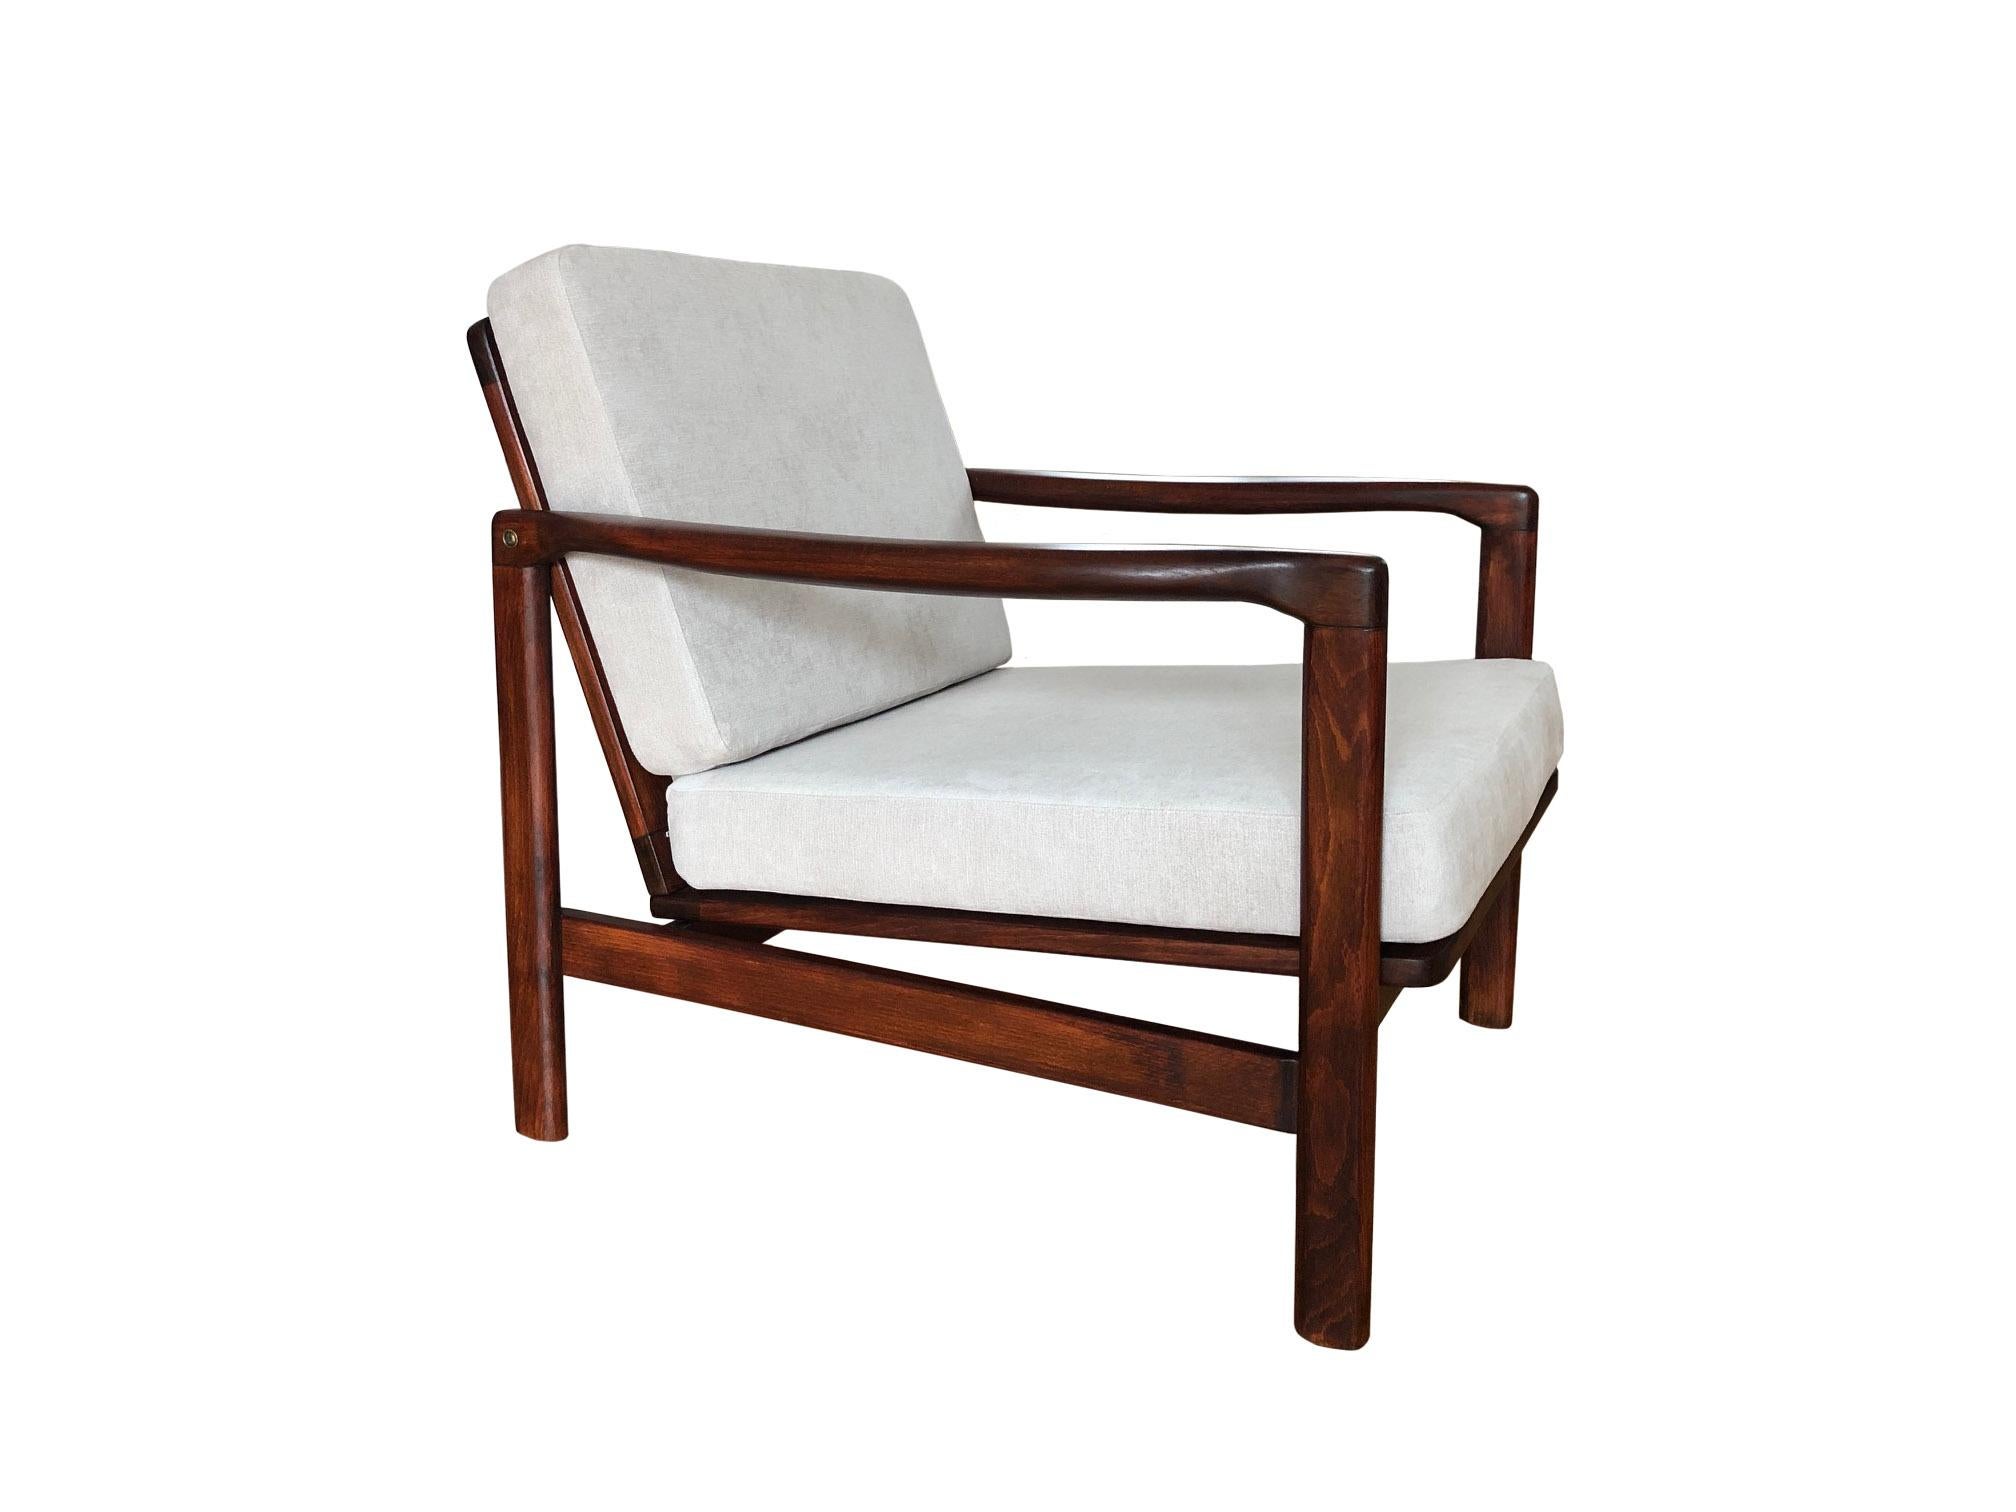 La chaise longue modèle B-7752, conçue par Zenon Baczyk, a été fabriquée par Swarzedzkie Fabryki Mebli en Pologne dans les années 1960. 

La structure est en bois de hêtre dans une couleur chaude de noyer, finie avec un vernis semi-mat. Le